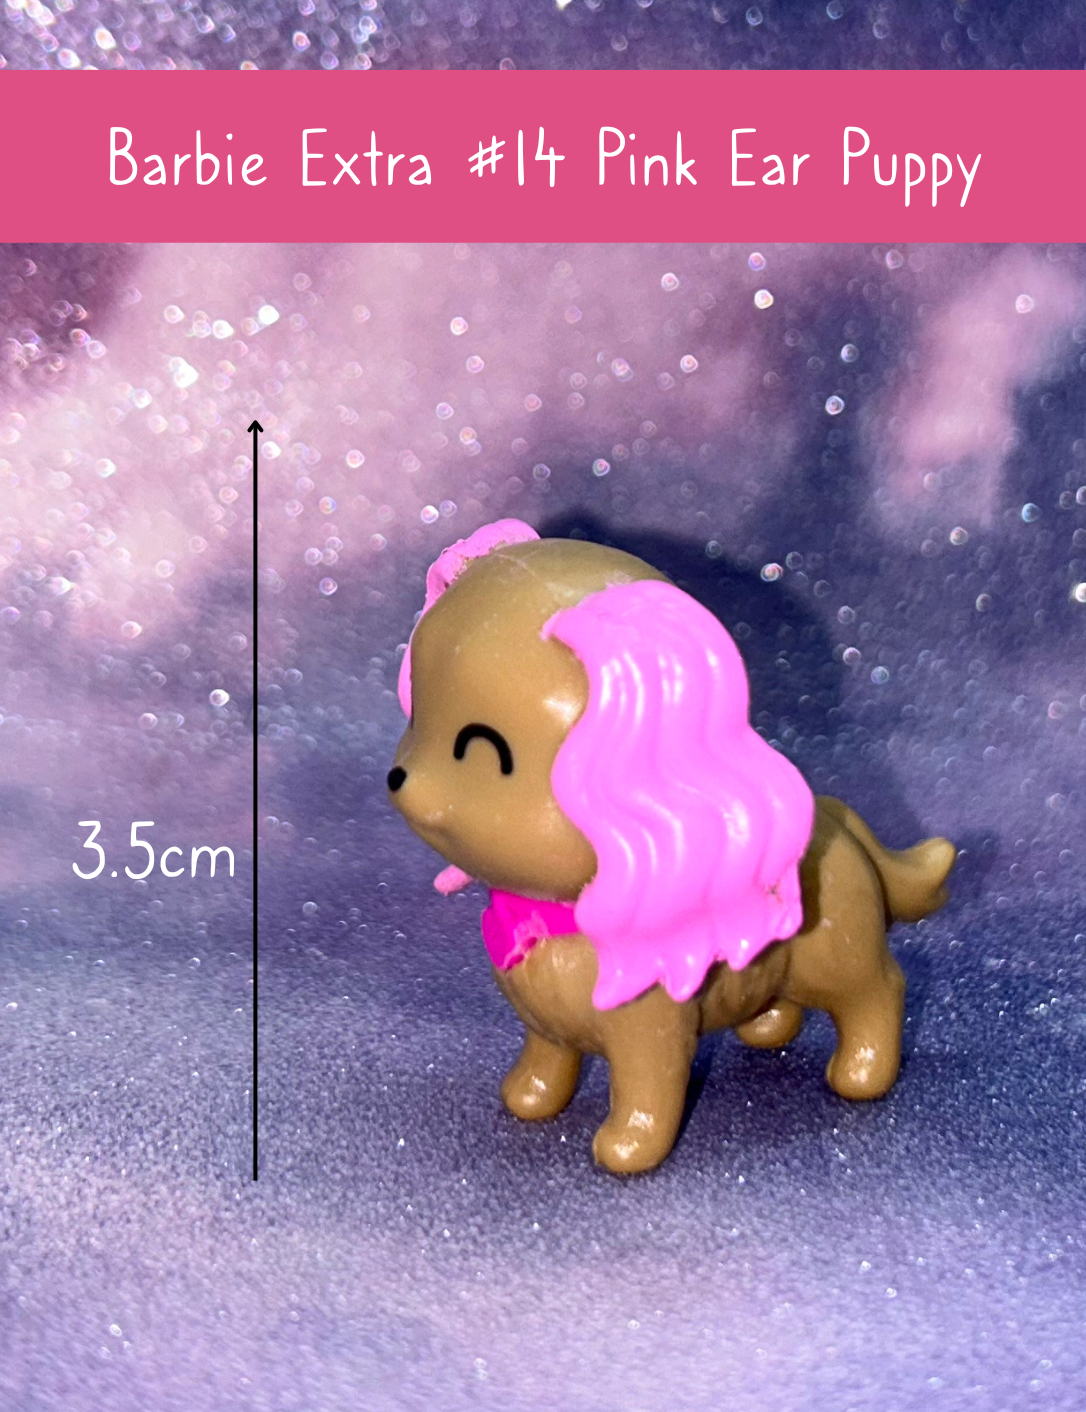 Barbie Extra #14 Fashion Doll Pink Ear Puppy Dog